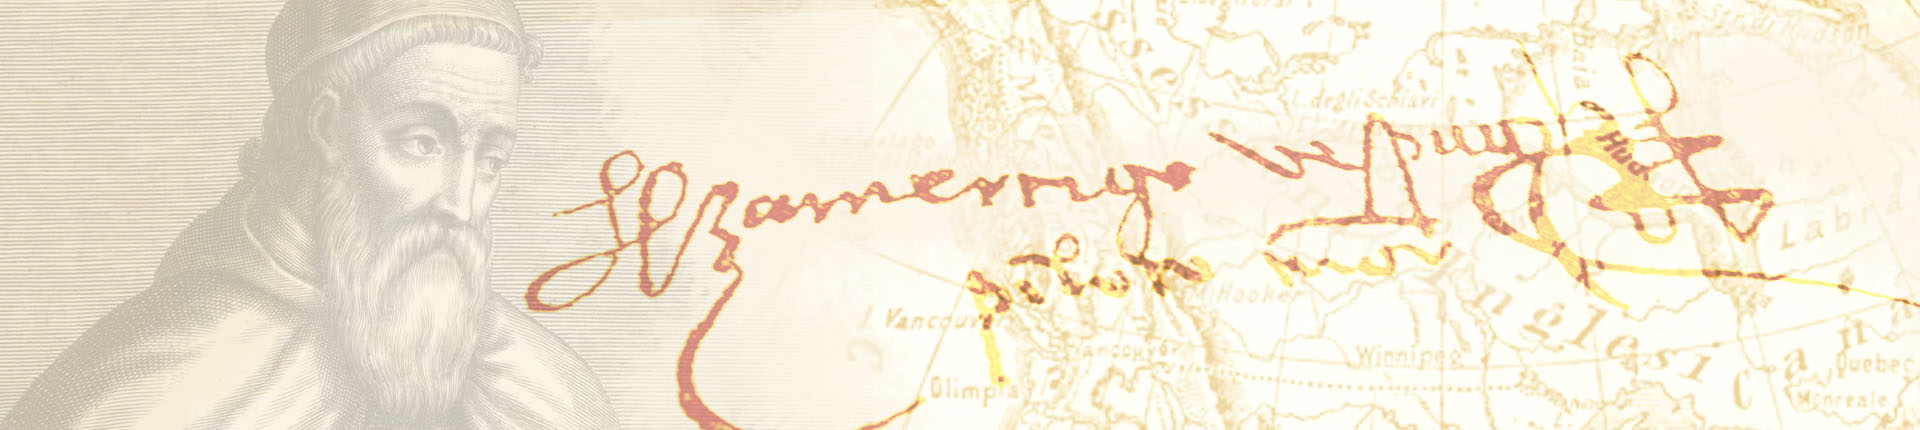 Illustrazione Amerigo Vespucci con la sua firma su carta invecchiata